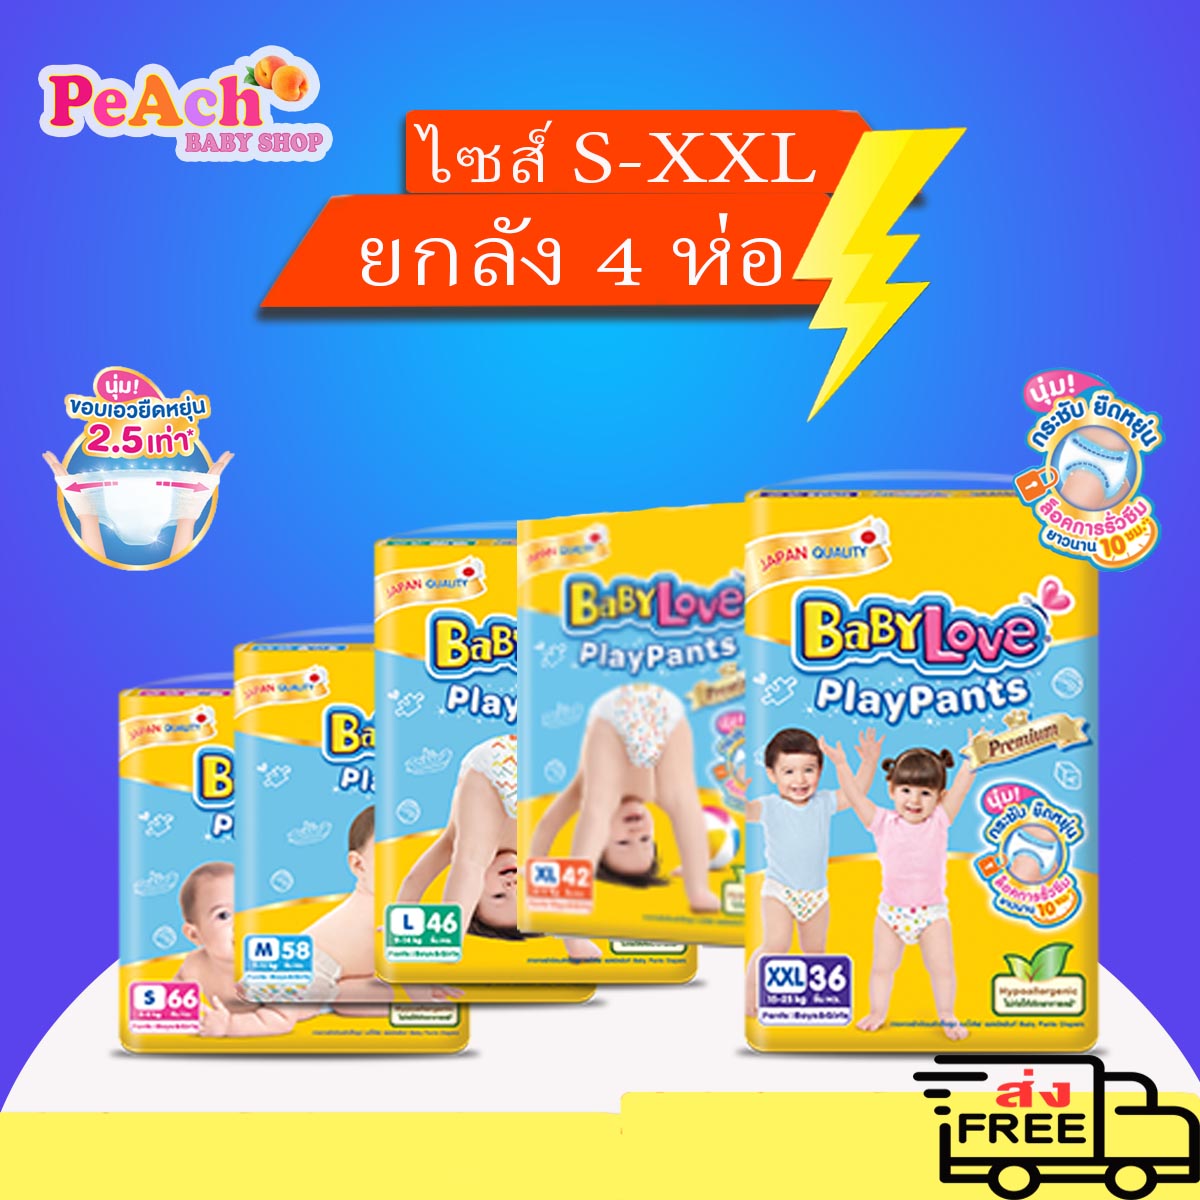 ซื้อที่ไหน ขายยกลัง BabyLove กางเกงผ้าอ้อมเด็ก รุ่น Playpant Nano Power Plus ไซส์ S-XXL